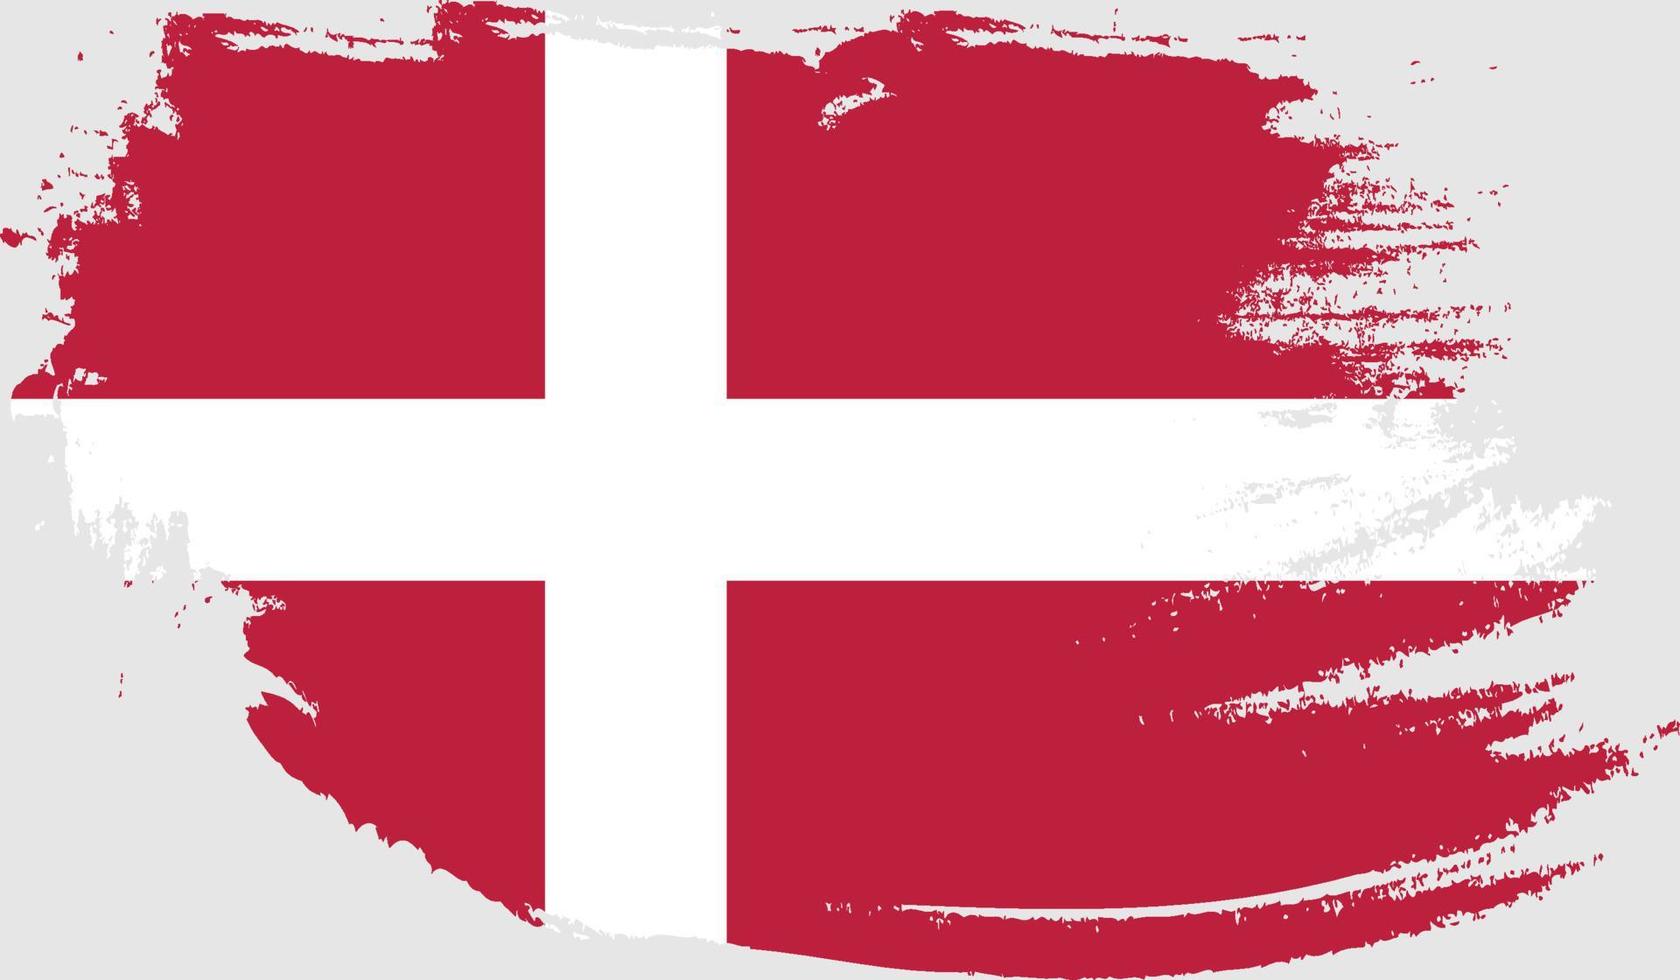 Dänemark-Flagge mit Grunge-Textur vektor